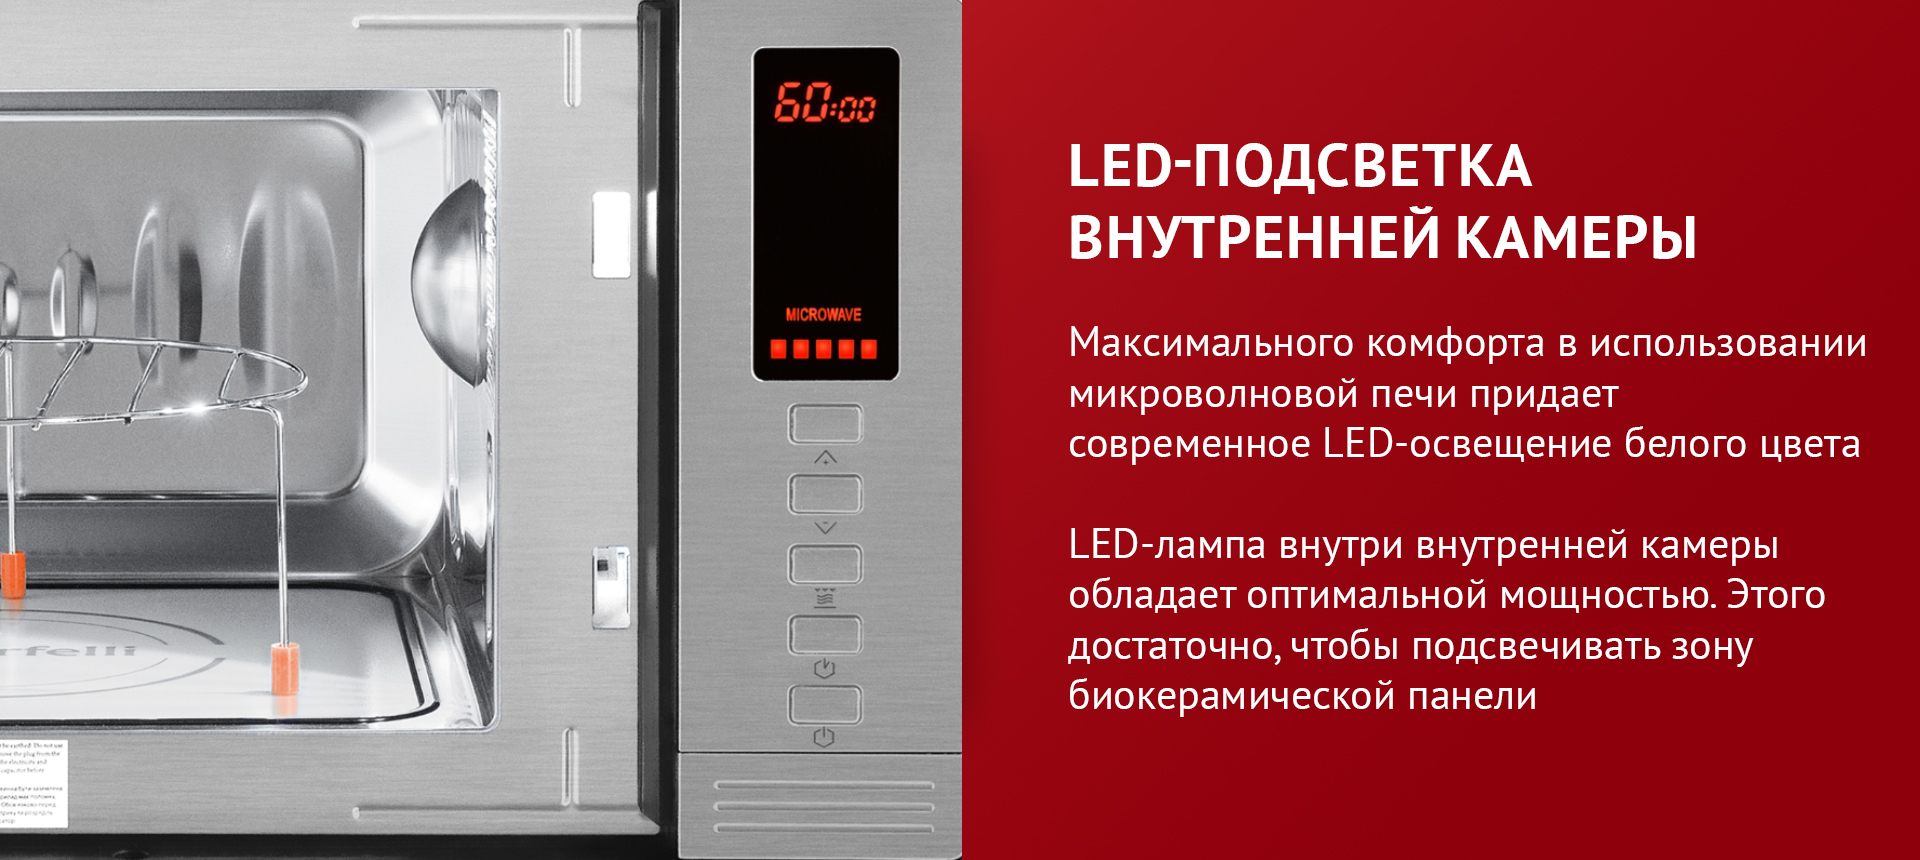 Максимального комфорта в использовании микроволновой печи придает LED-освещение белого цвета. LED-лампа внутри внутренней камеры обладает оптимальной мощностью. Этого достаточно, чтобы подсвечивать зону биокерамической панели